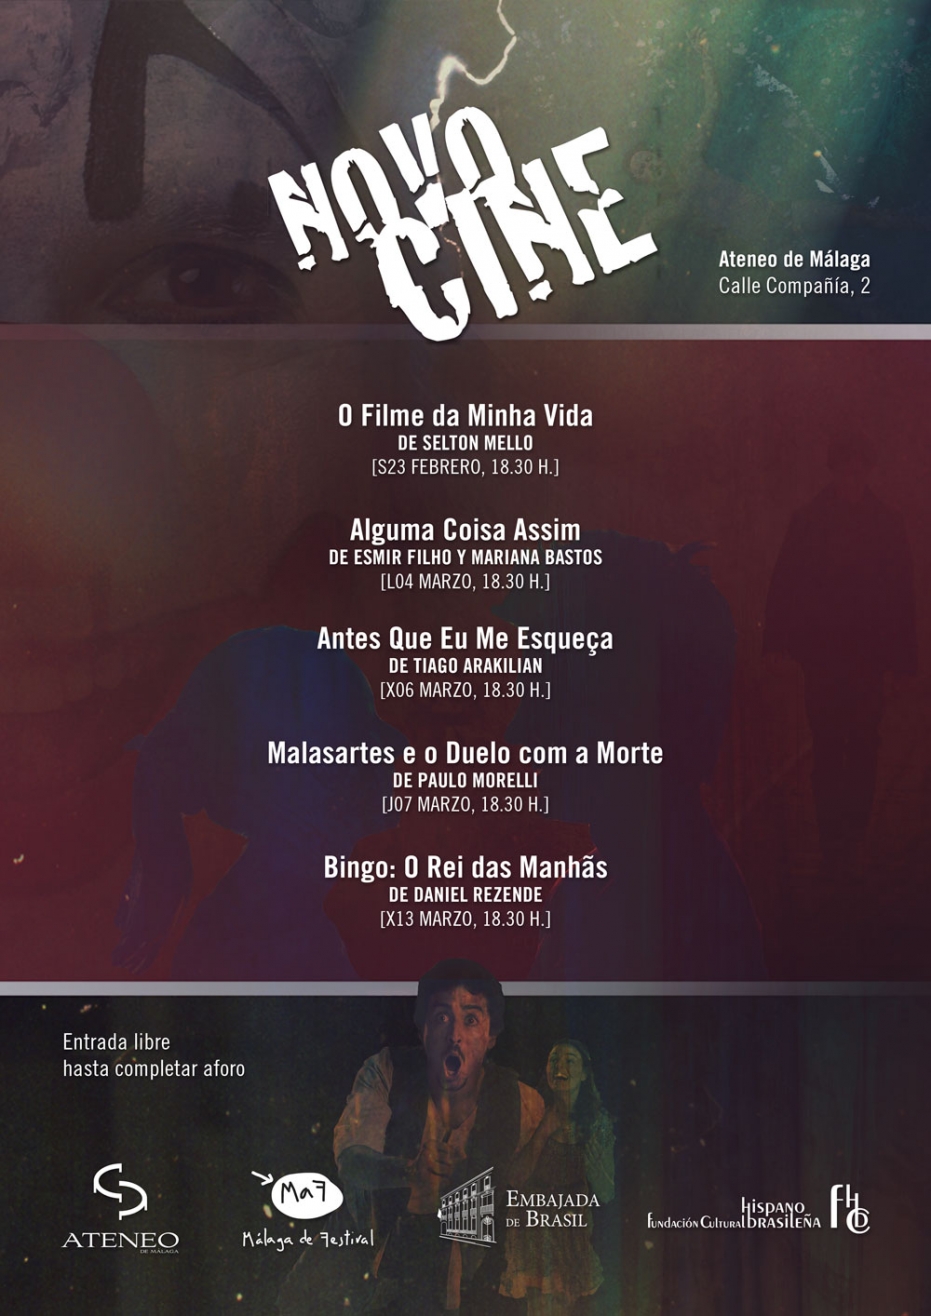 II Ciclo de Cine Novocine: proyección de Alguma Coisa Assim, de Esmir Filho y Mariana Bastos. En colaboración con la Embajada de Brasil y la Fundación Cultural Hispano Brasileña